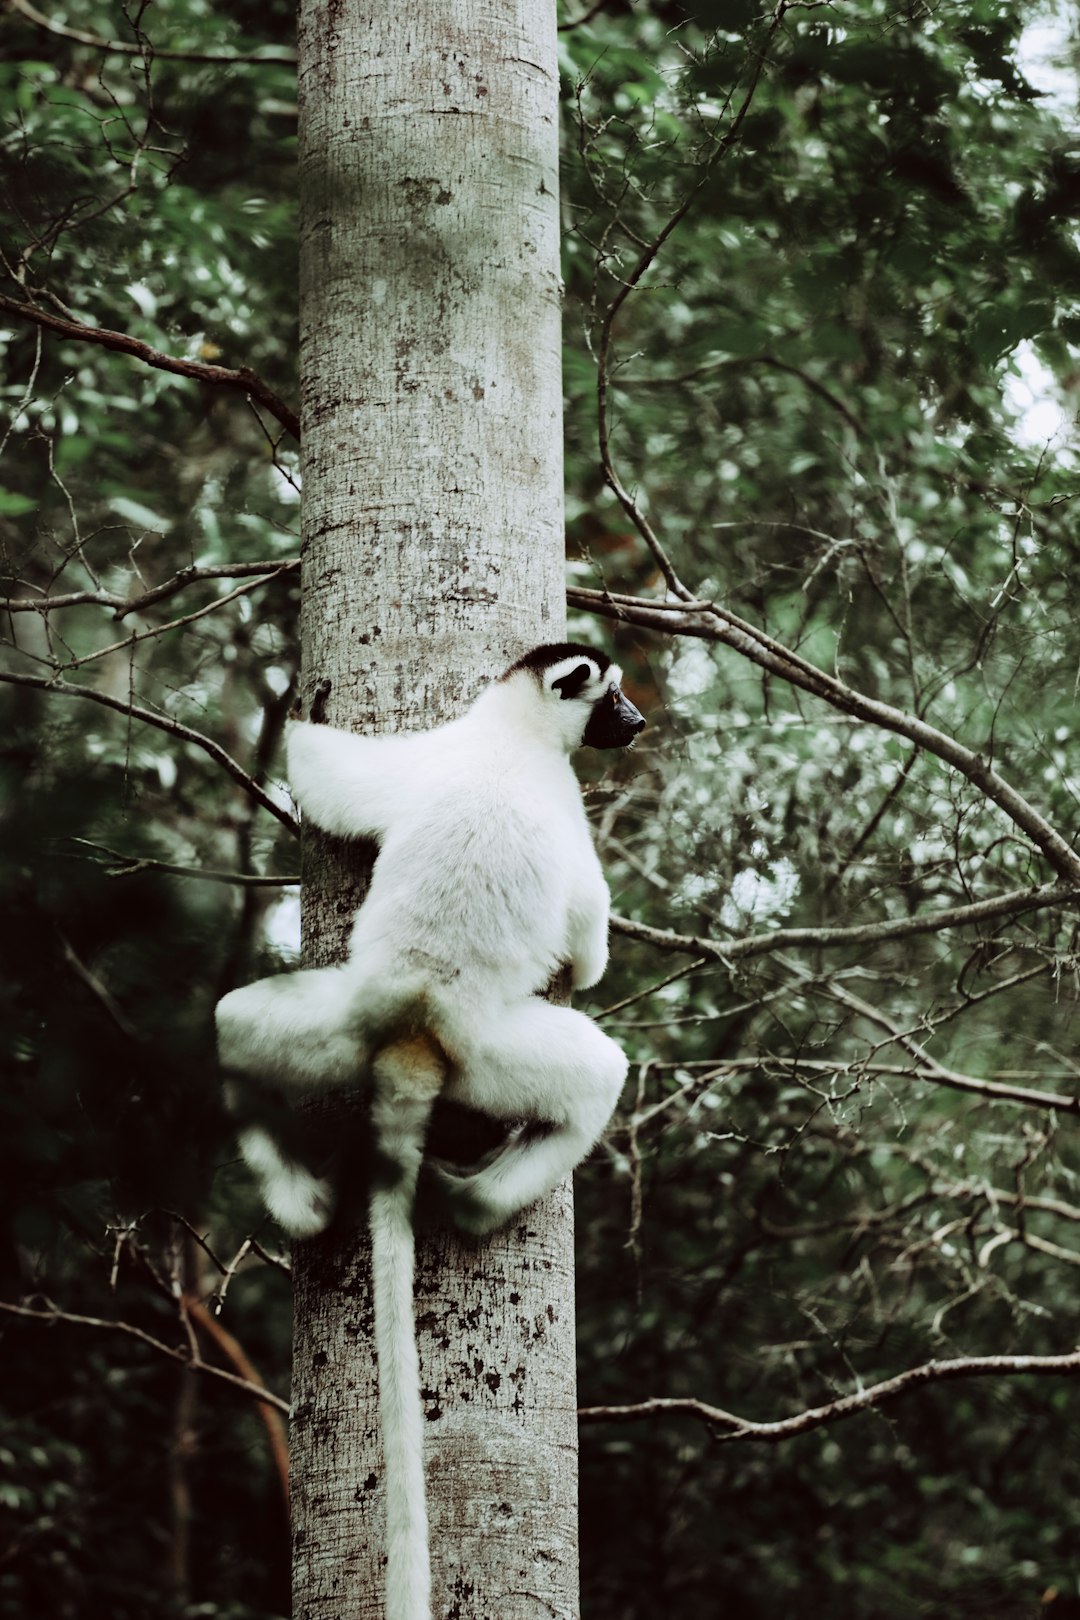 lemur climbing tree during daytime